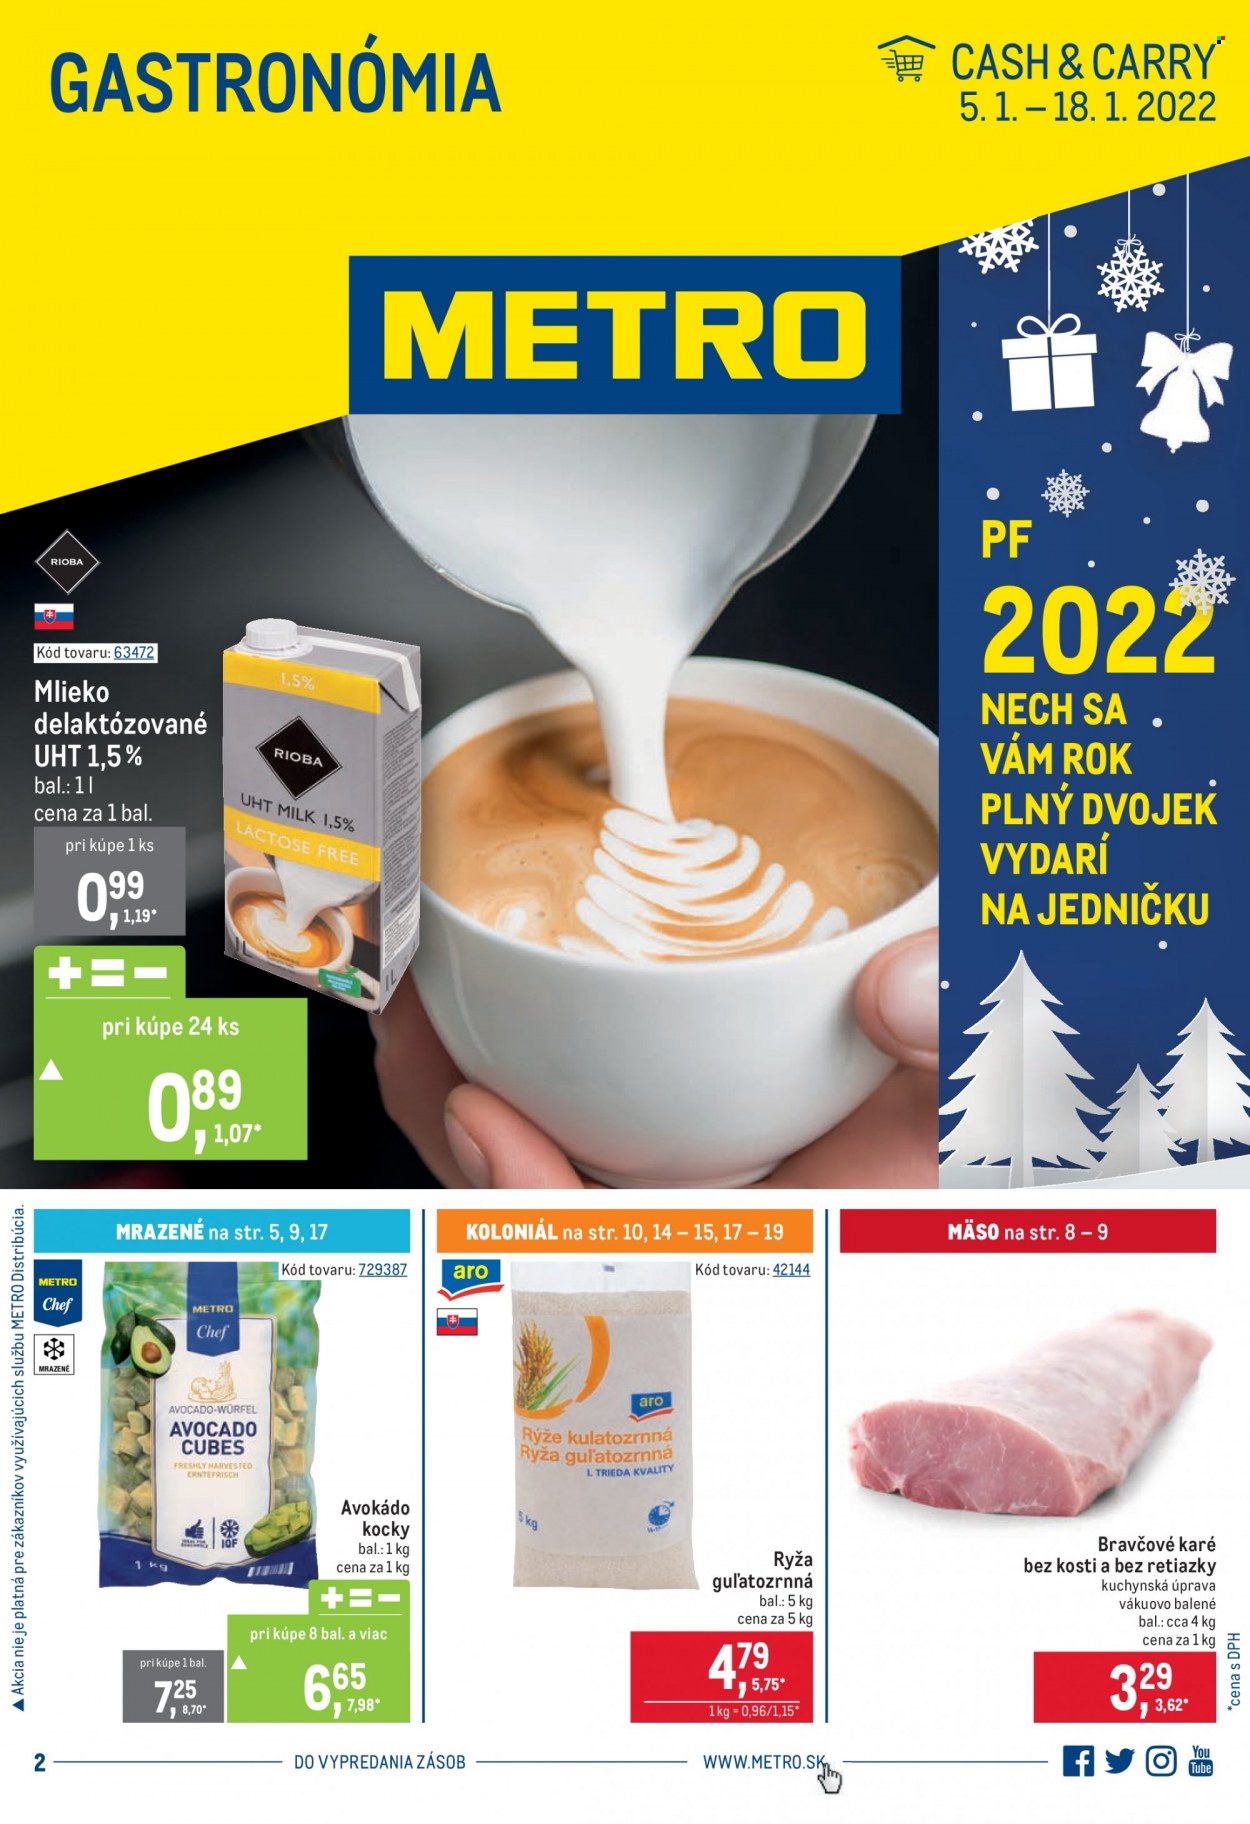 thumbnail - Leták Metro - 5.1.2022 - 18.1.2022 - Produkty v akcii - ARO, bravčové karé, Metro  Chef, mlieko, bezlaktózové mlieko, avokádo kocky, ryža, ryža guľatozrnná. Strana 1.